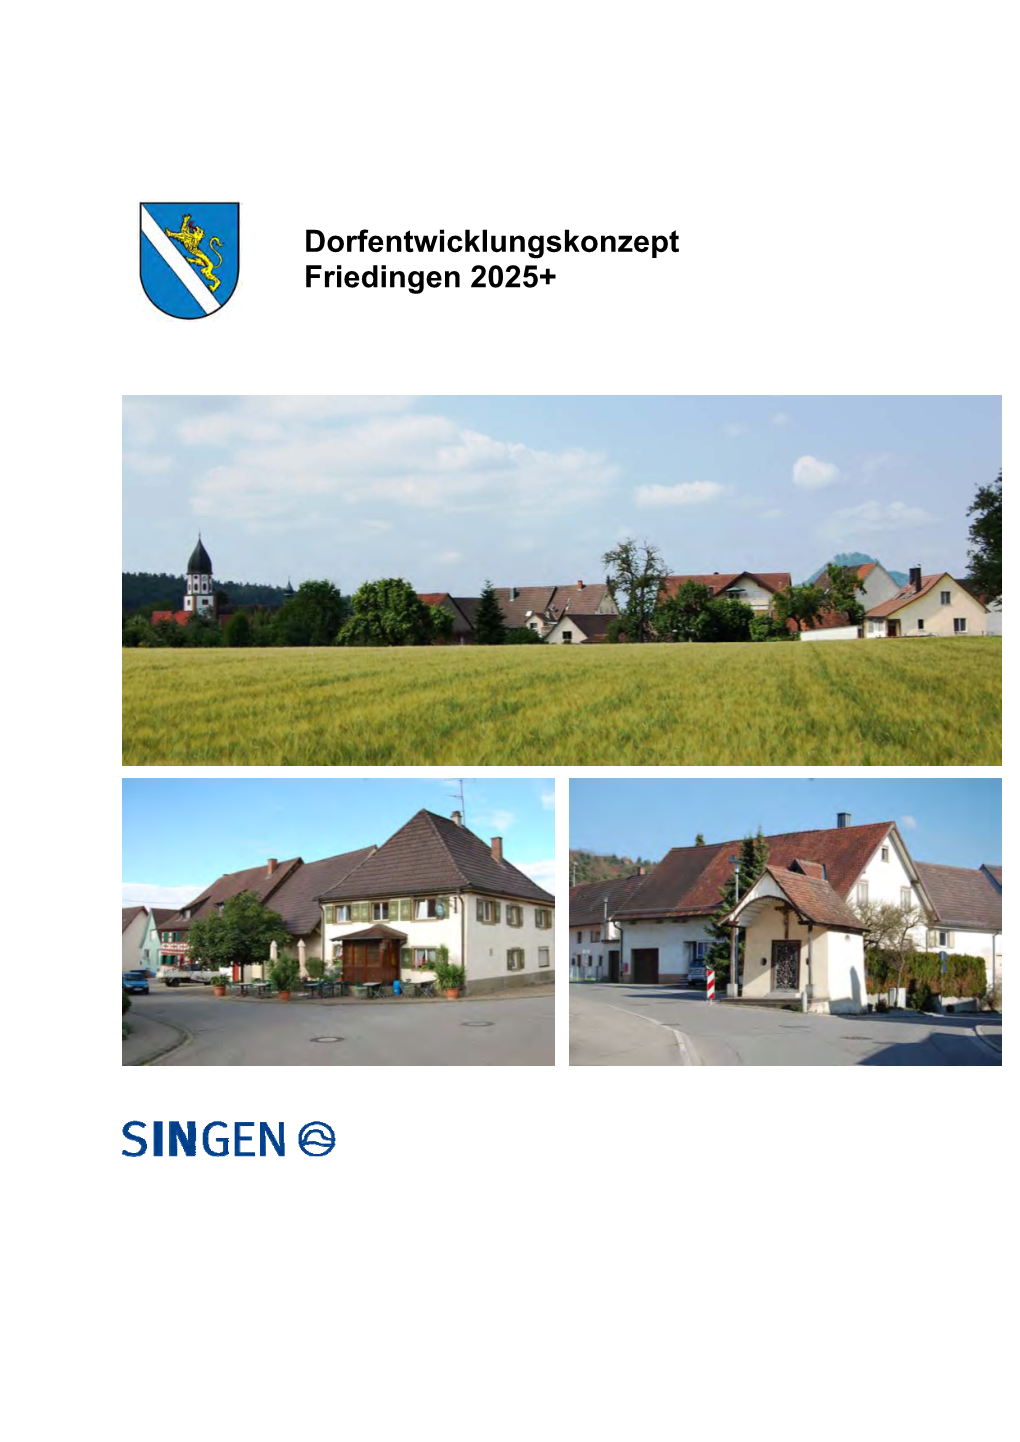 Dorfentwicklungskonzept Friedingen 2025+